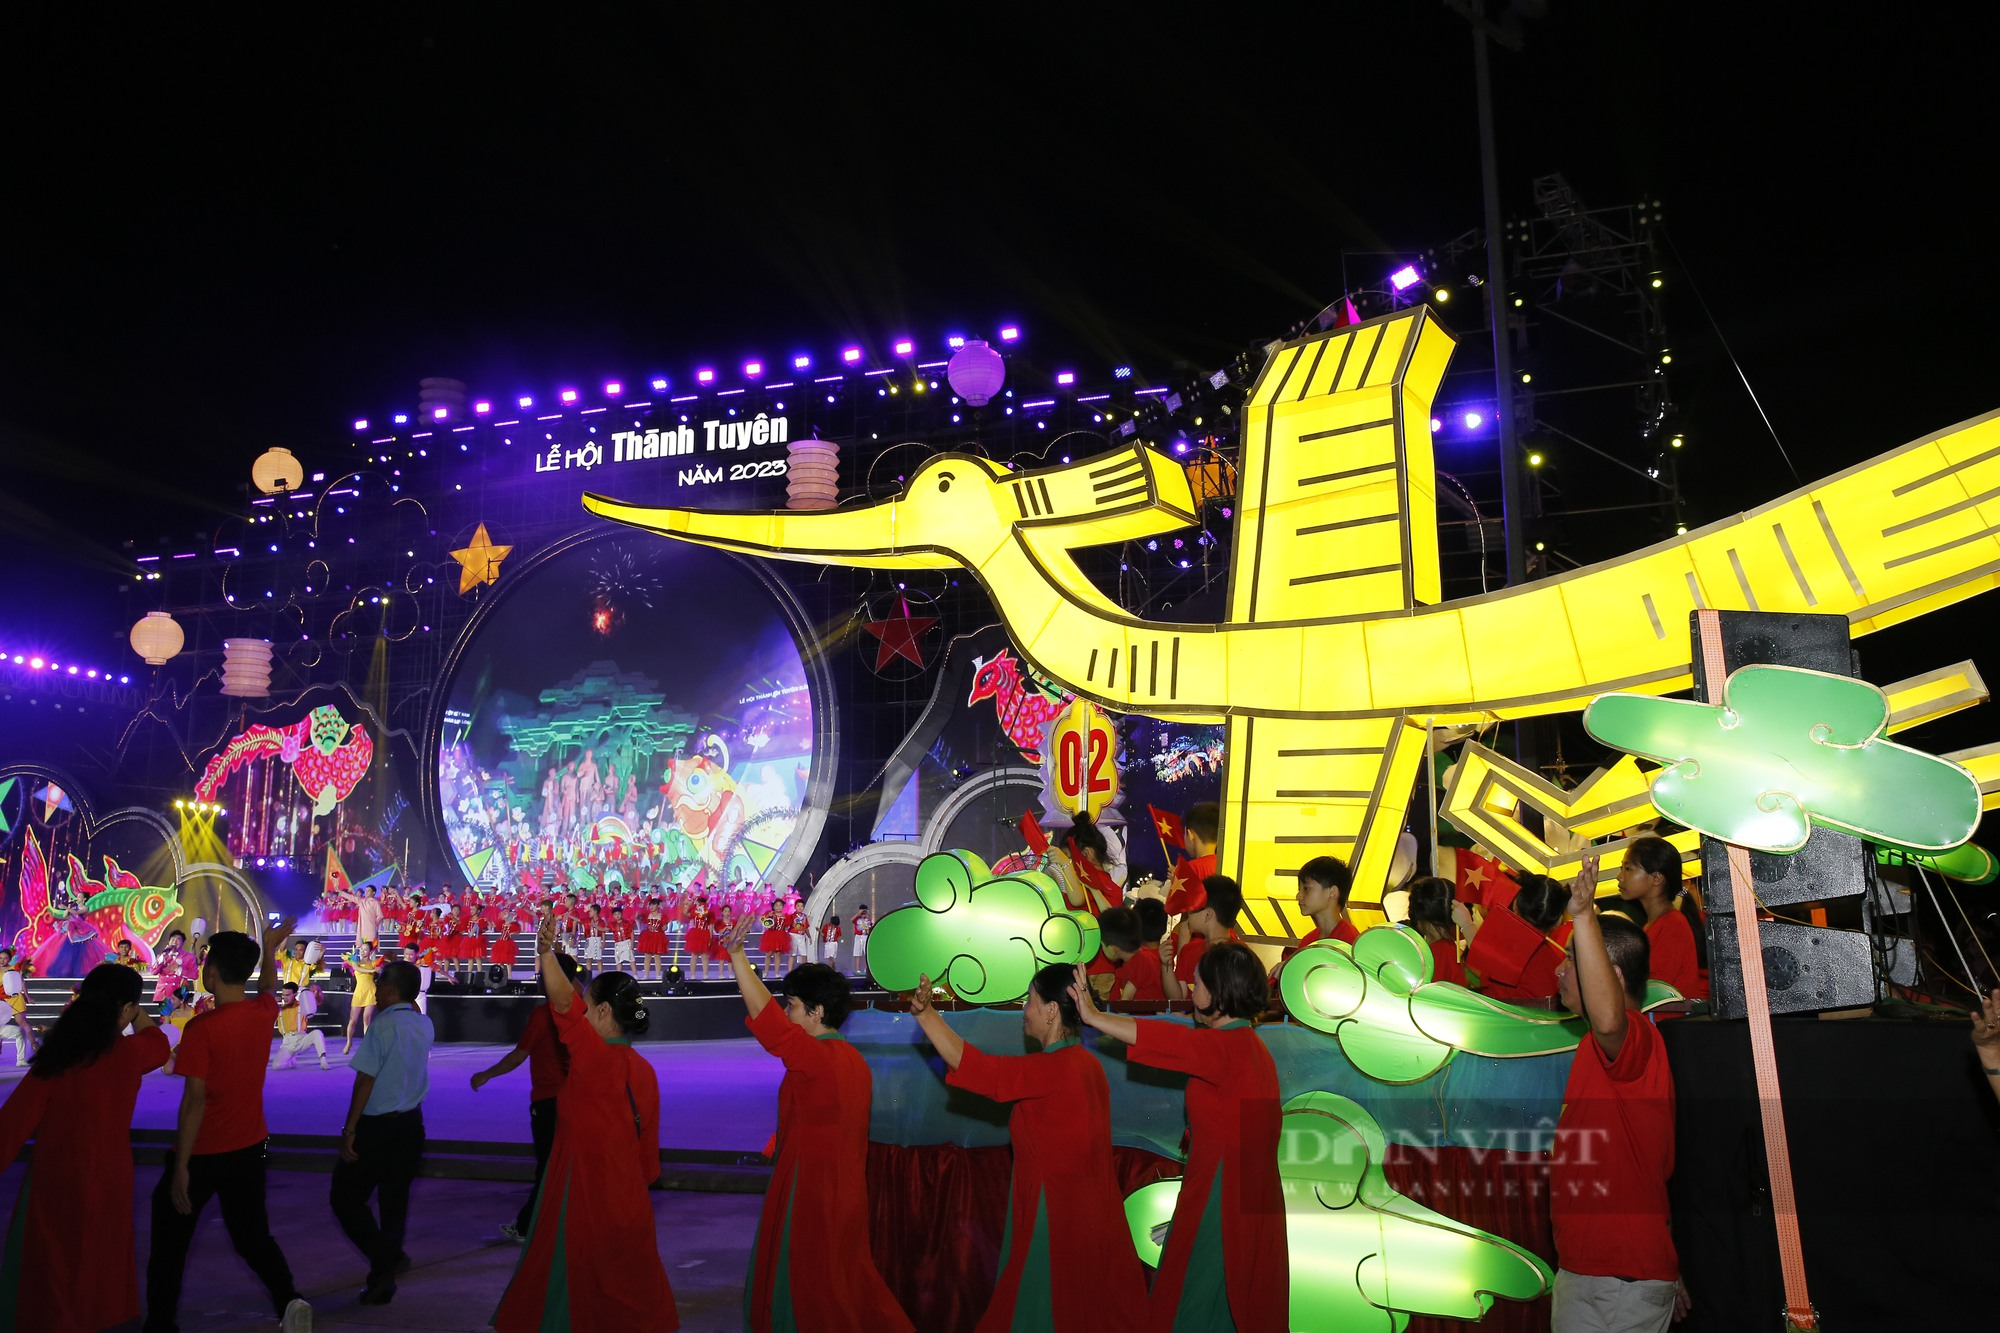 Chiêm ngưỡng những mô hình đèn Trung thu khổng lồ tại Lễ hội thành Tuyên năm 2023 - Ảnh 2.